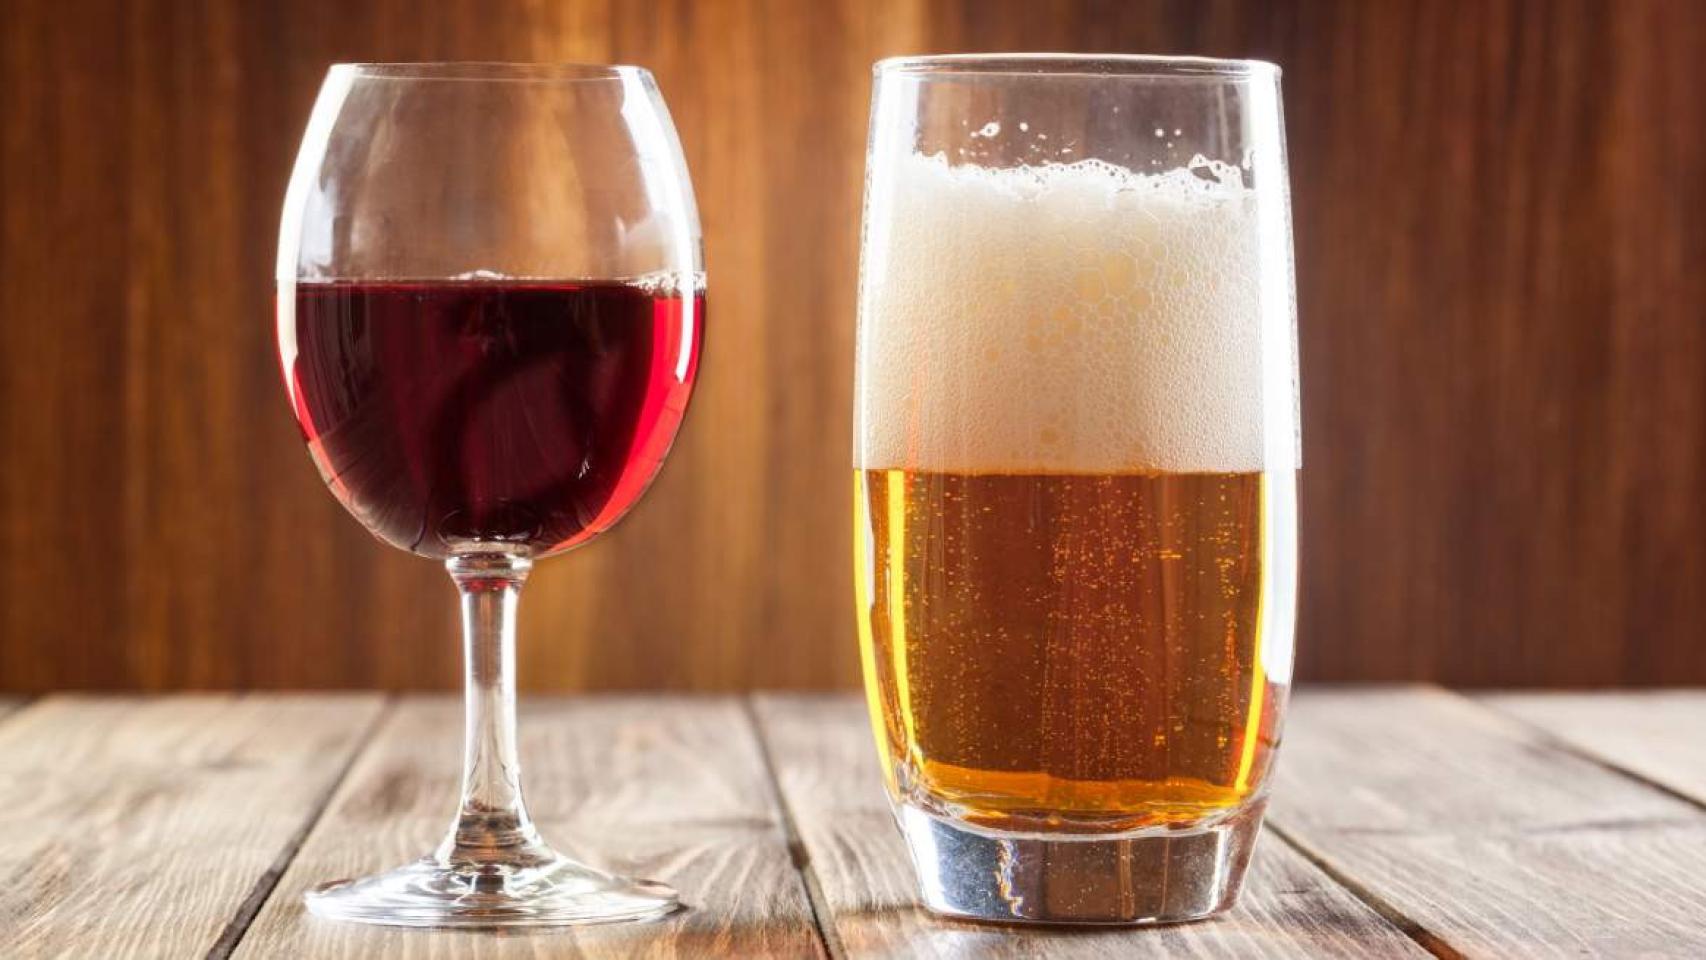  Bebidas Alcohólicas: Comida Gourmet y Alimentos: Wine, Beer,  Spirits y más